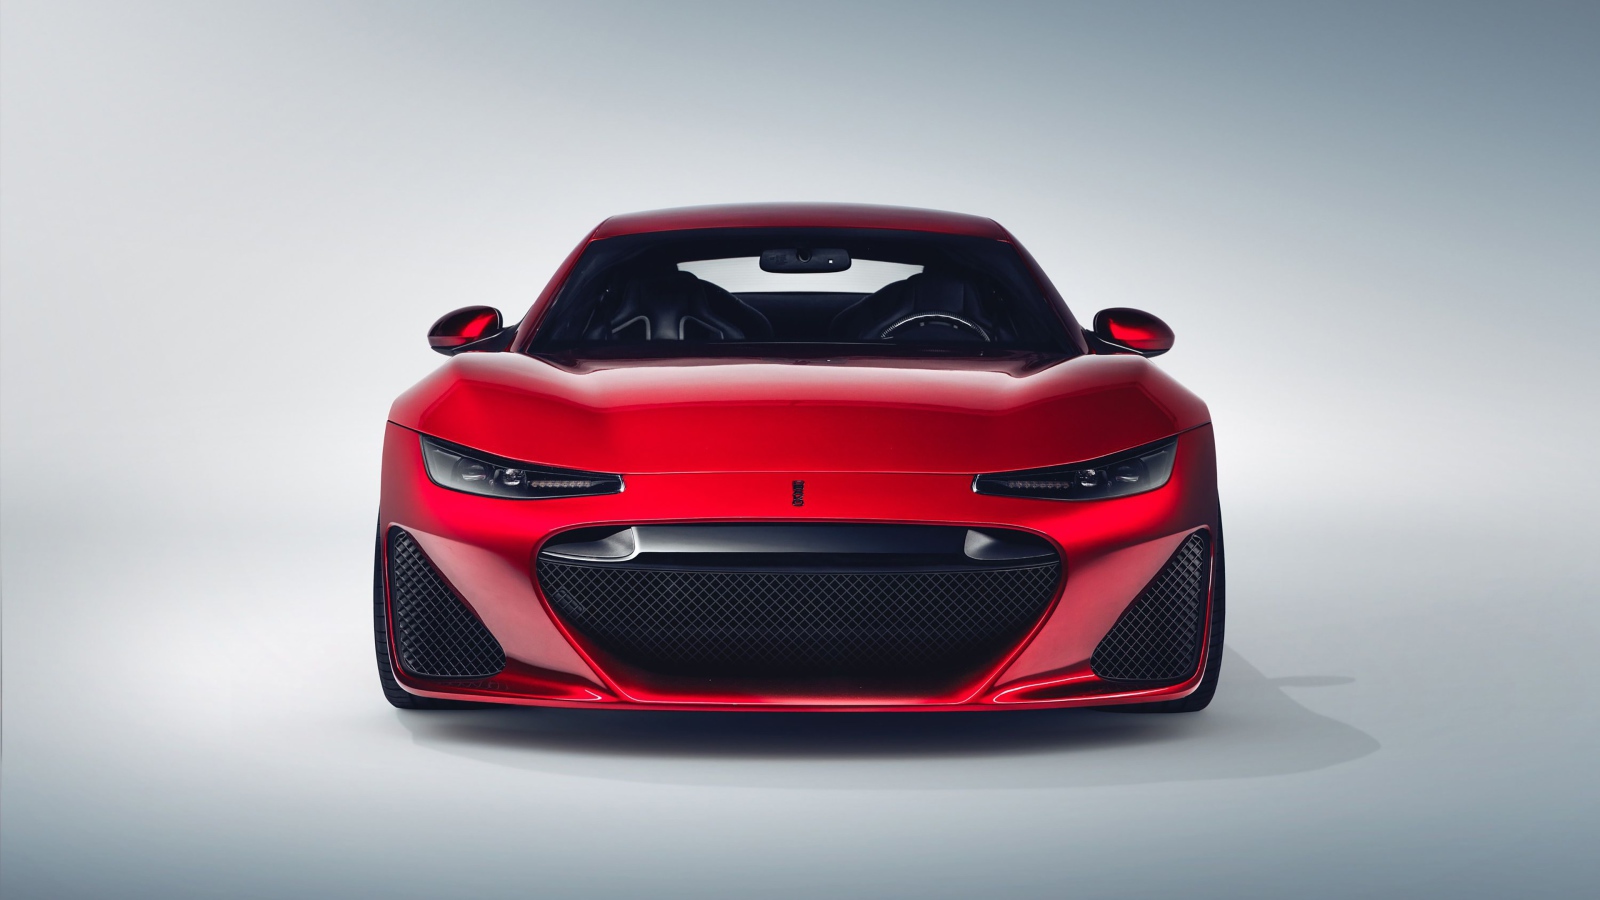 Красный автомобиль  Drako GTE, 2020 года вид спереди